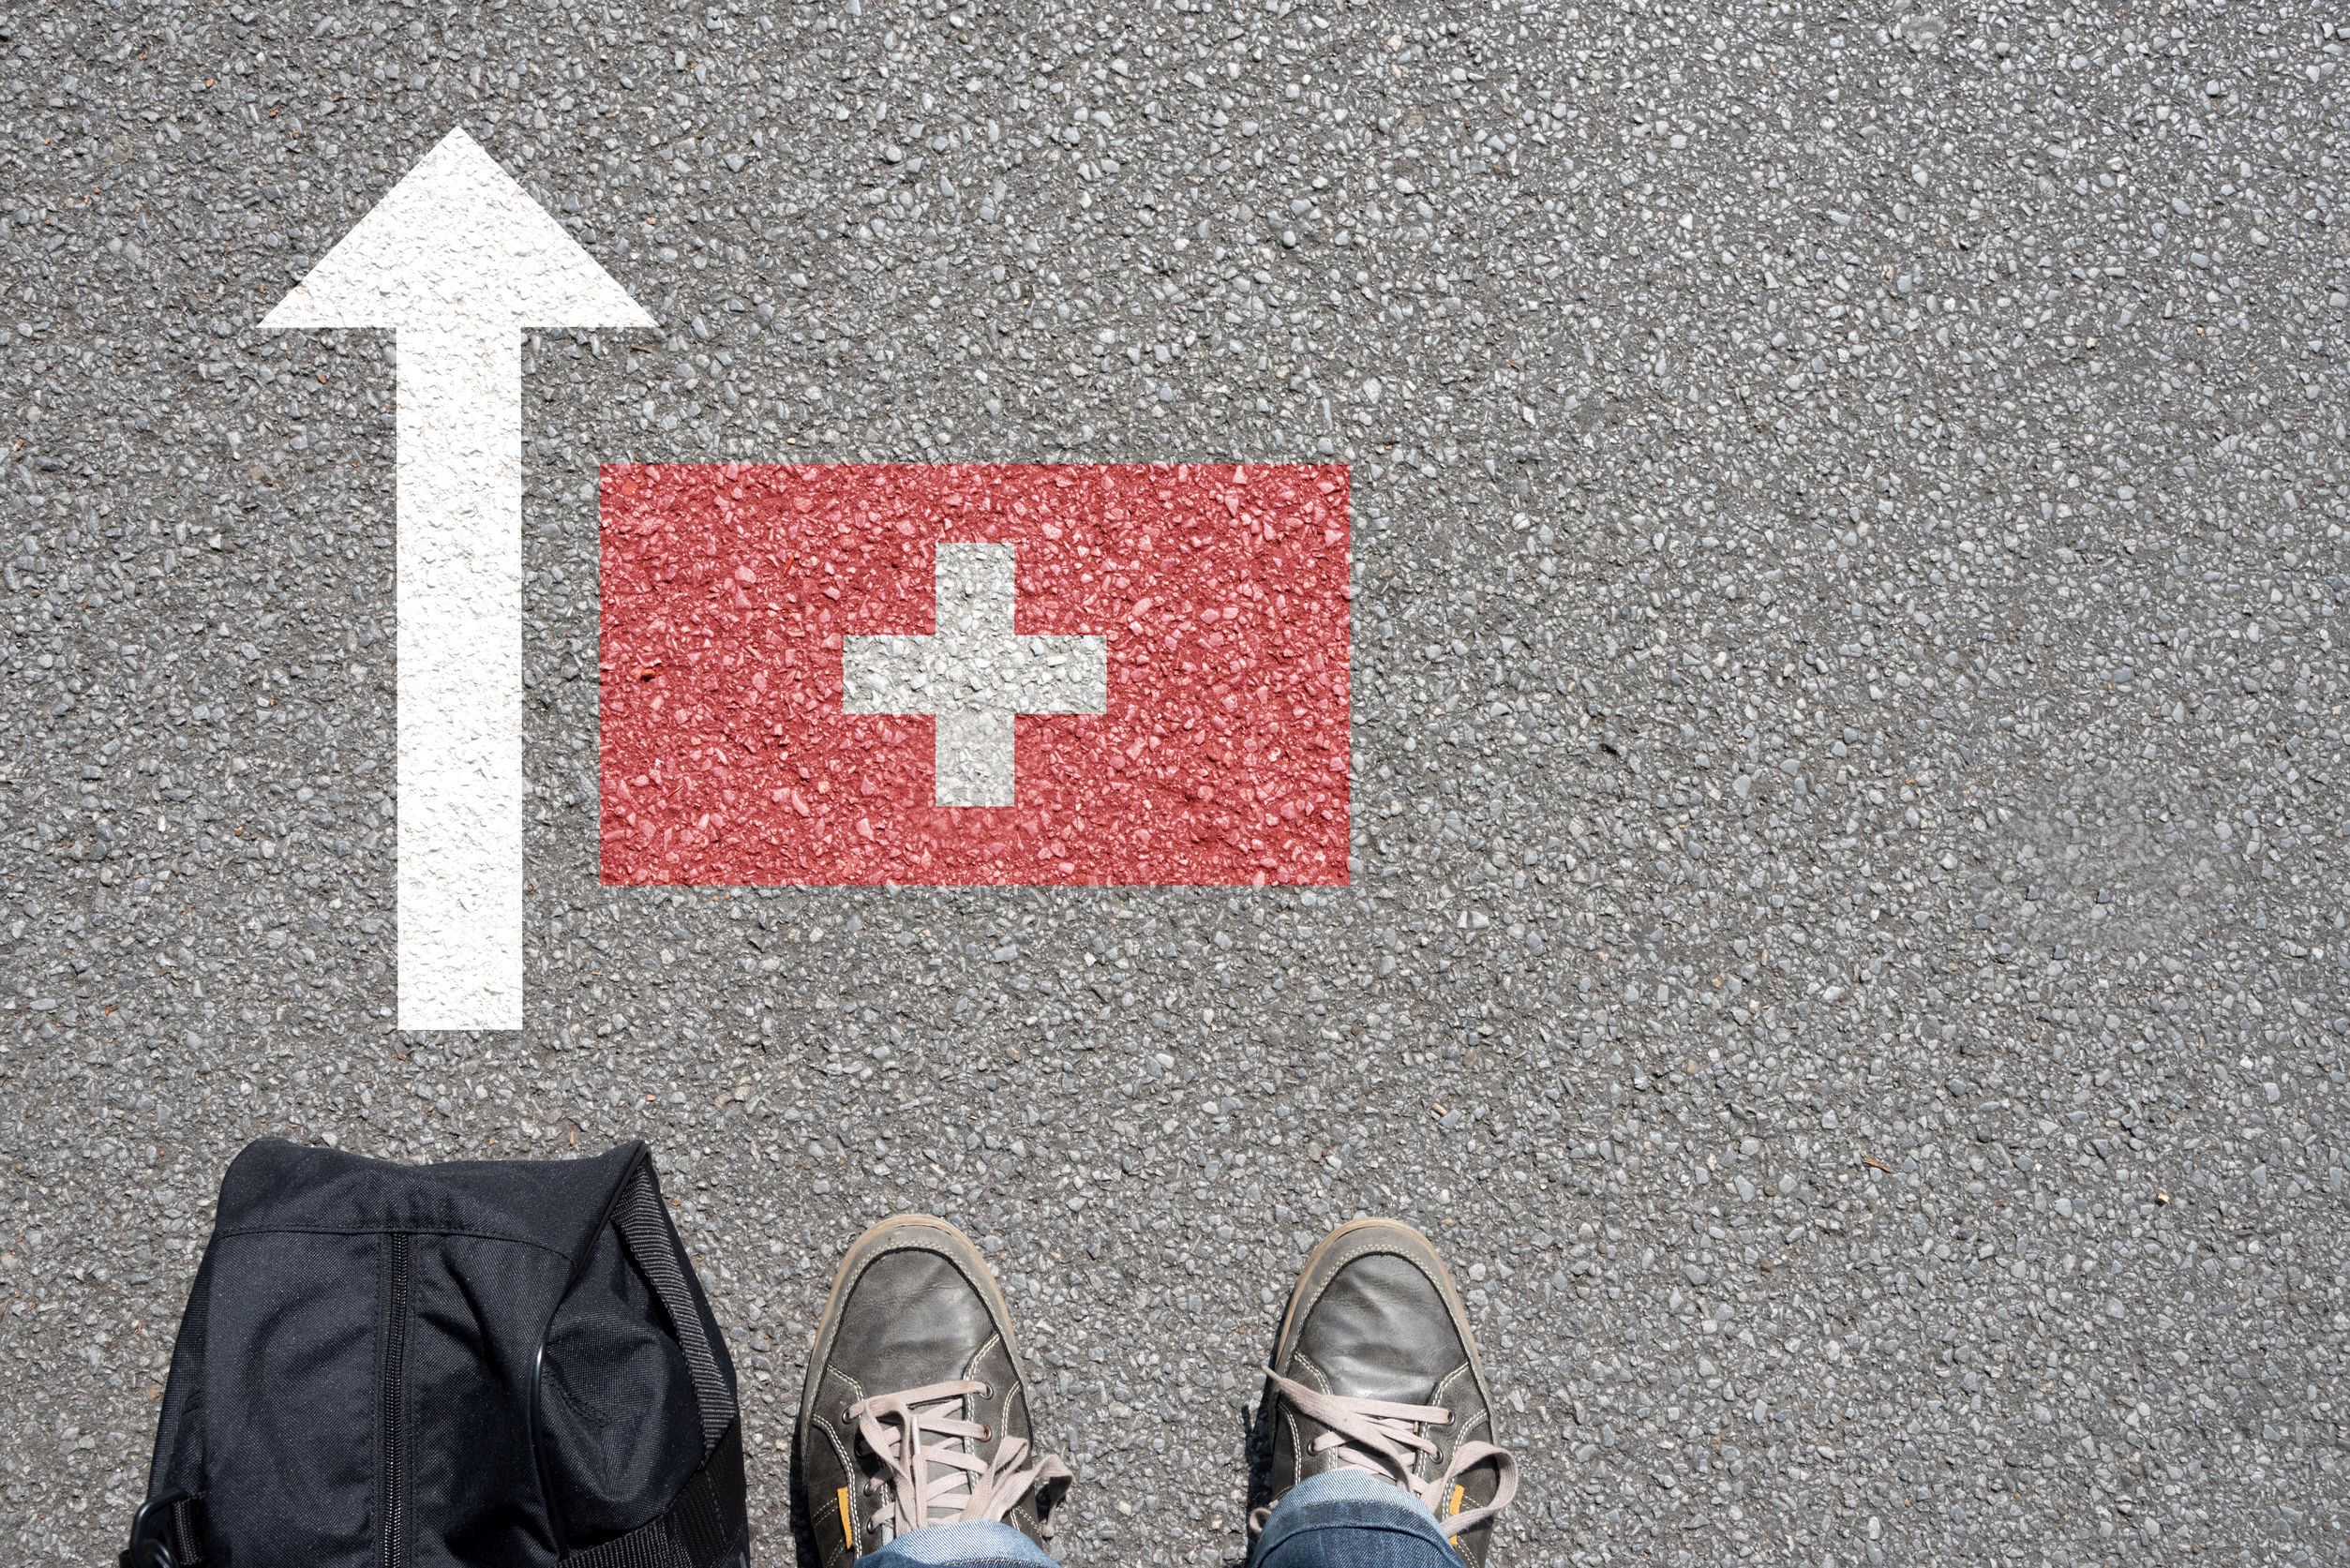 İsviçre de göçün sınırlandırılması için referandum girişimi başlatıldı